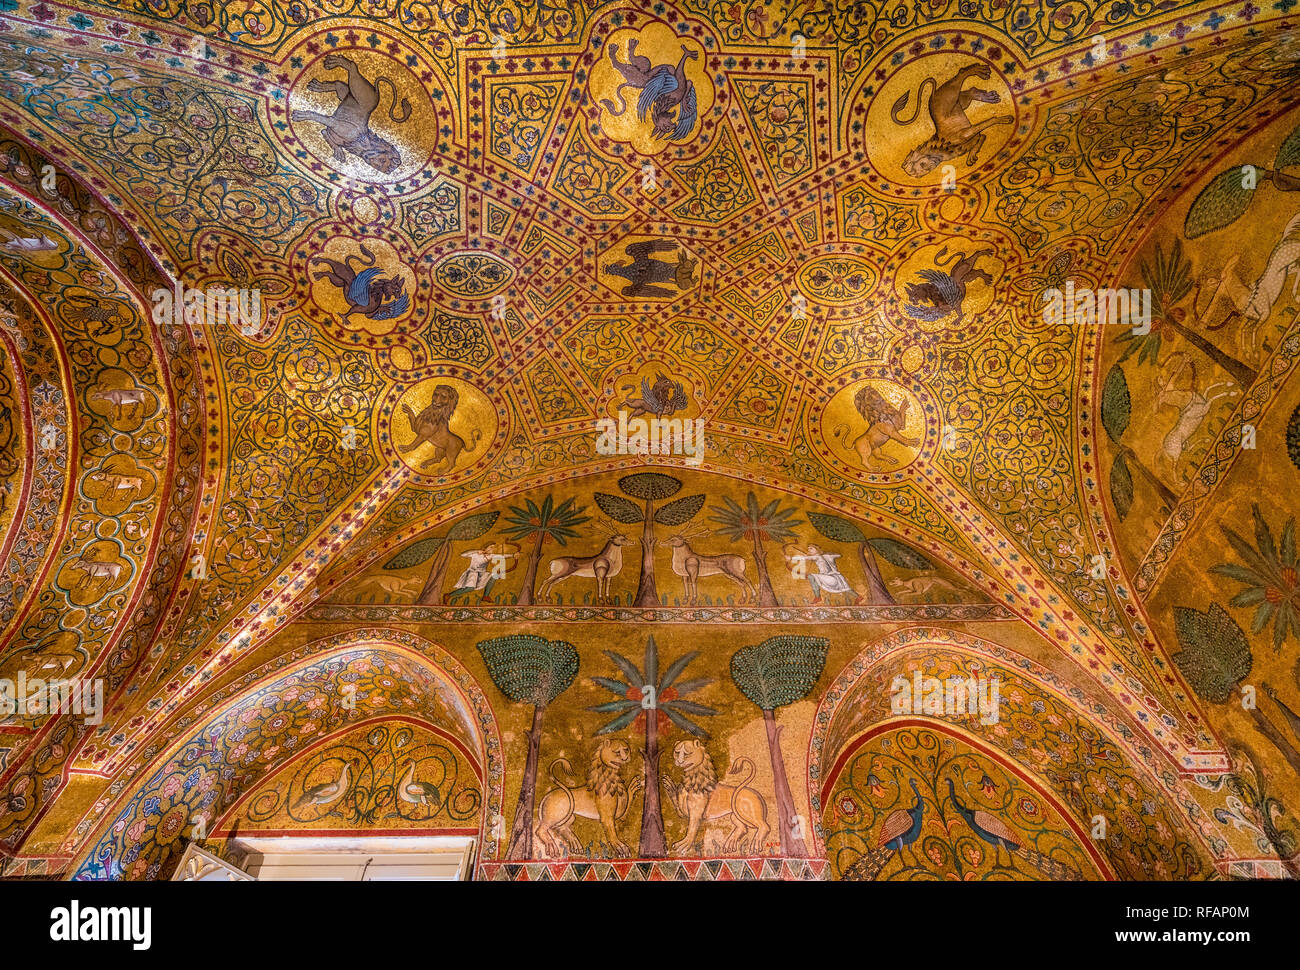 König Ruggero Zimmer in der normannischen Palast (Palazzo dei Normanni) in Palermo. Sizilien, Italien. Stockfoto